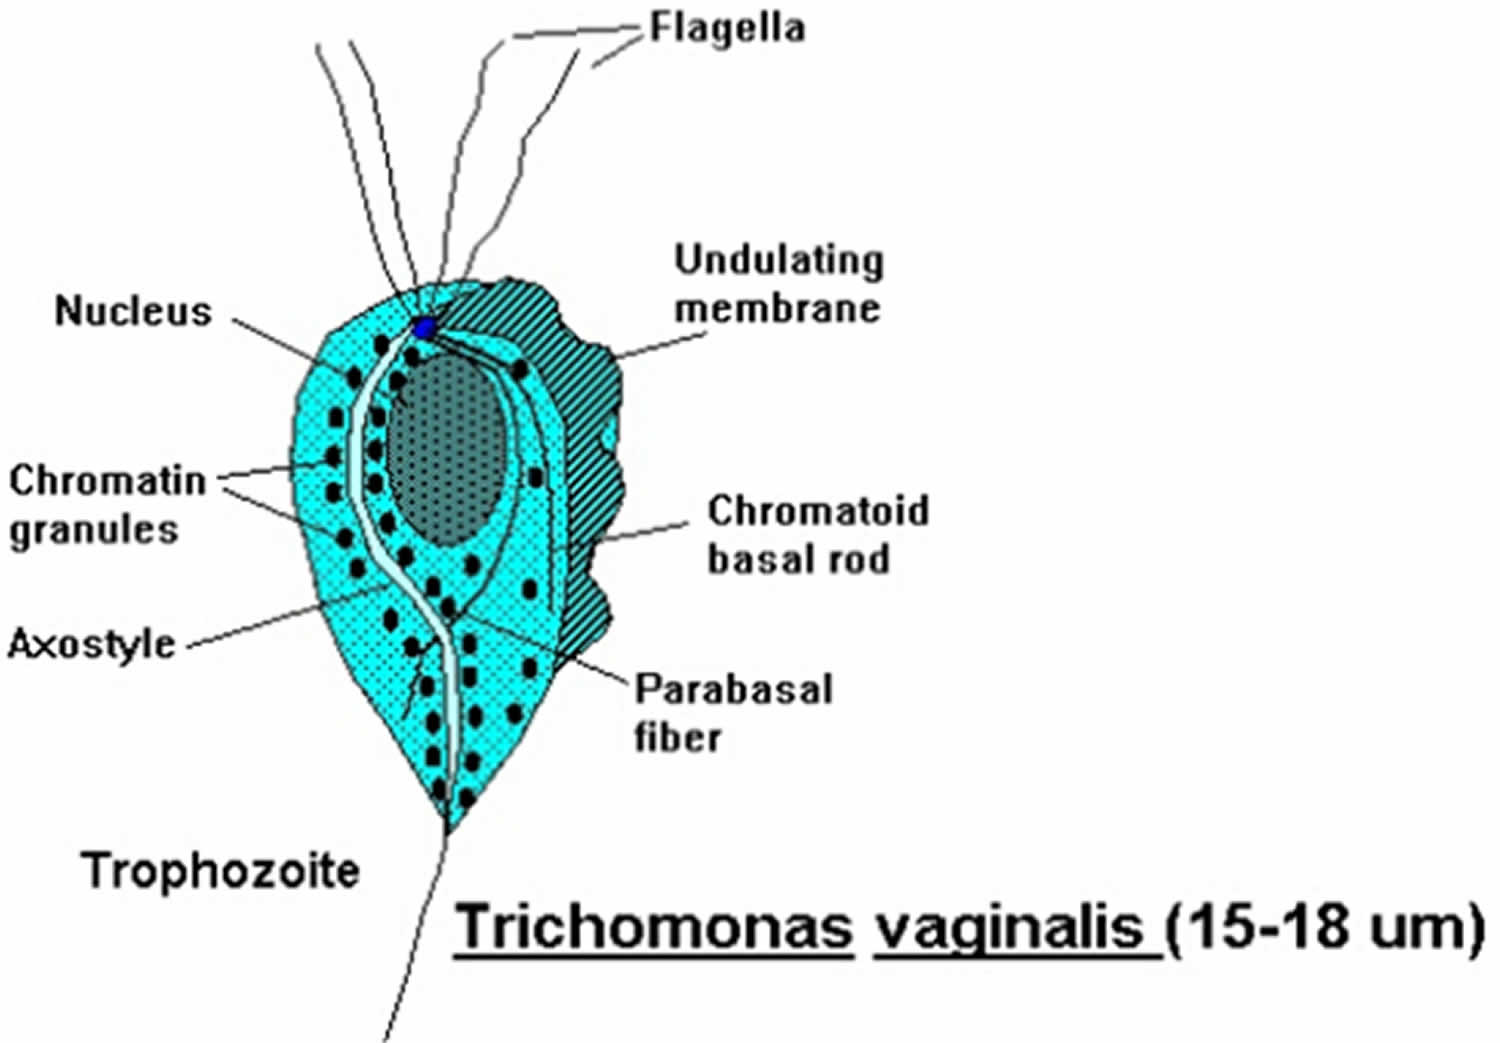 Trichomonia és prostatitis